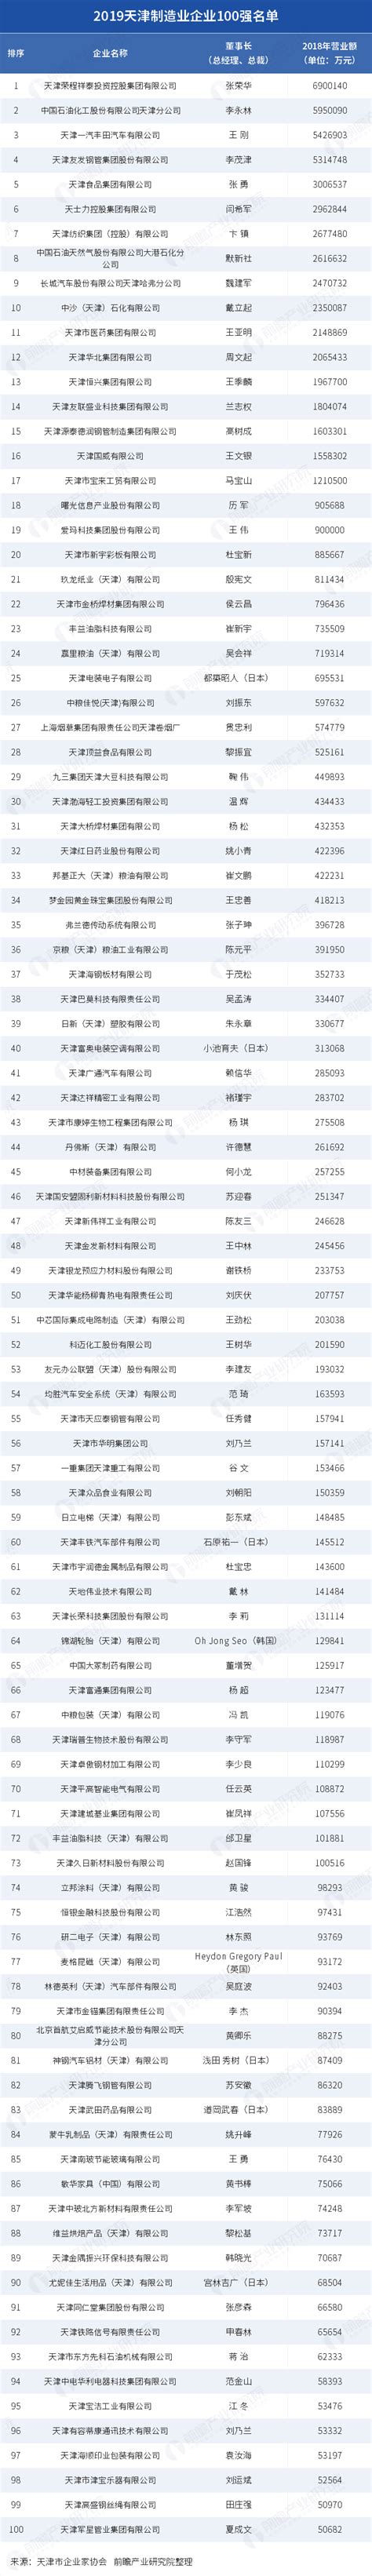 2019天津制造业企业100强名单( 完整版 )_研究报告 - 手机前瞻网